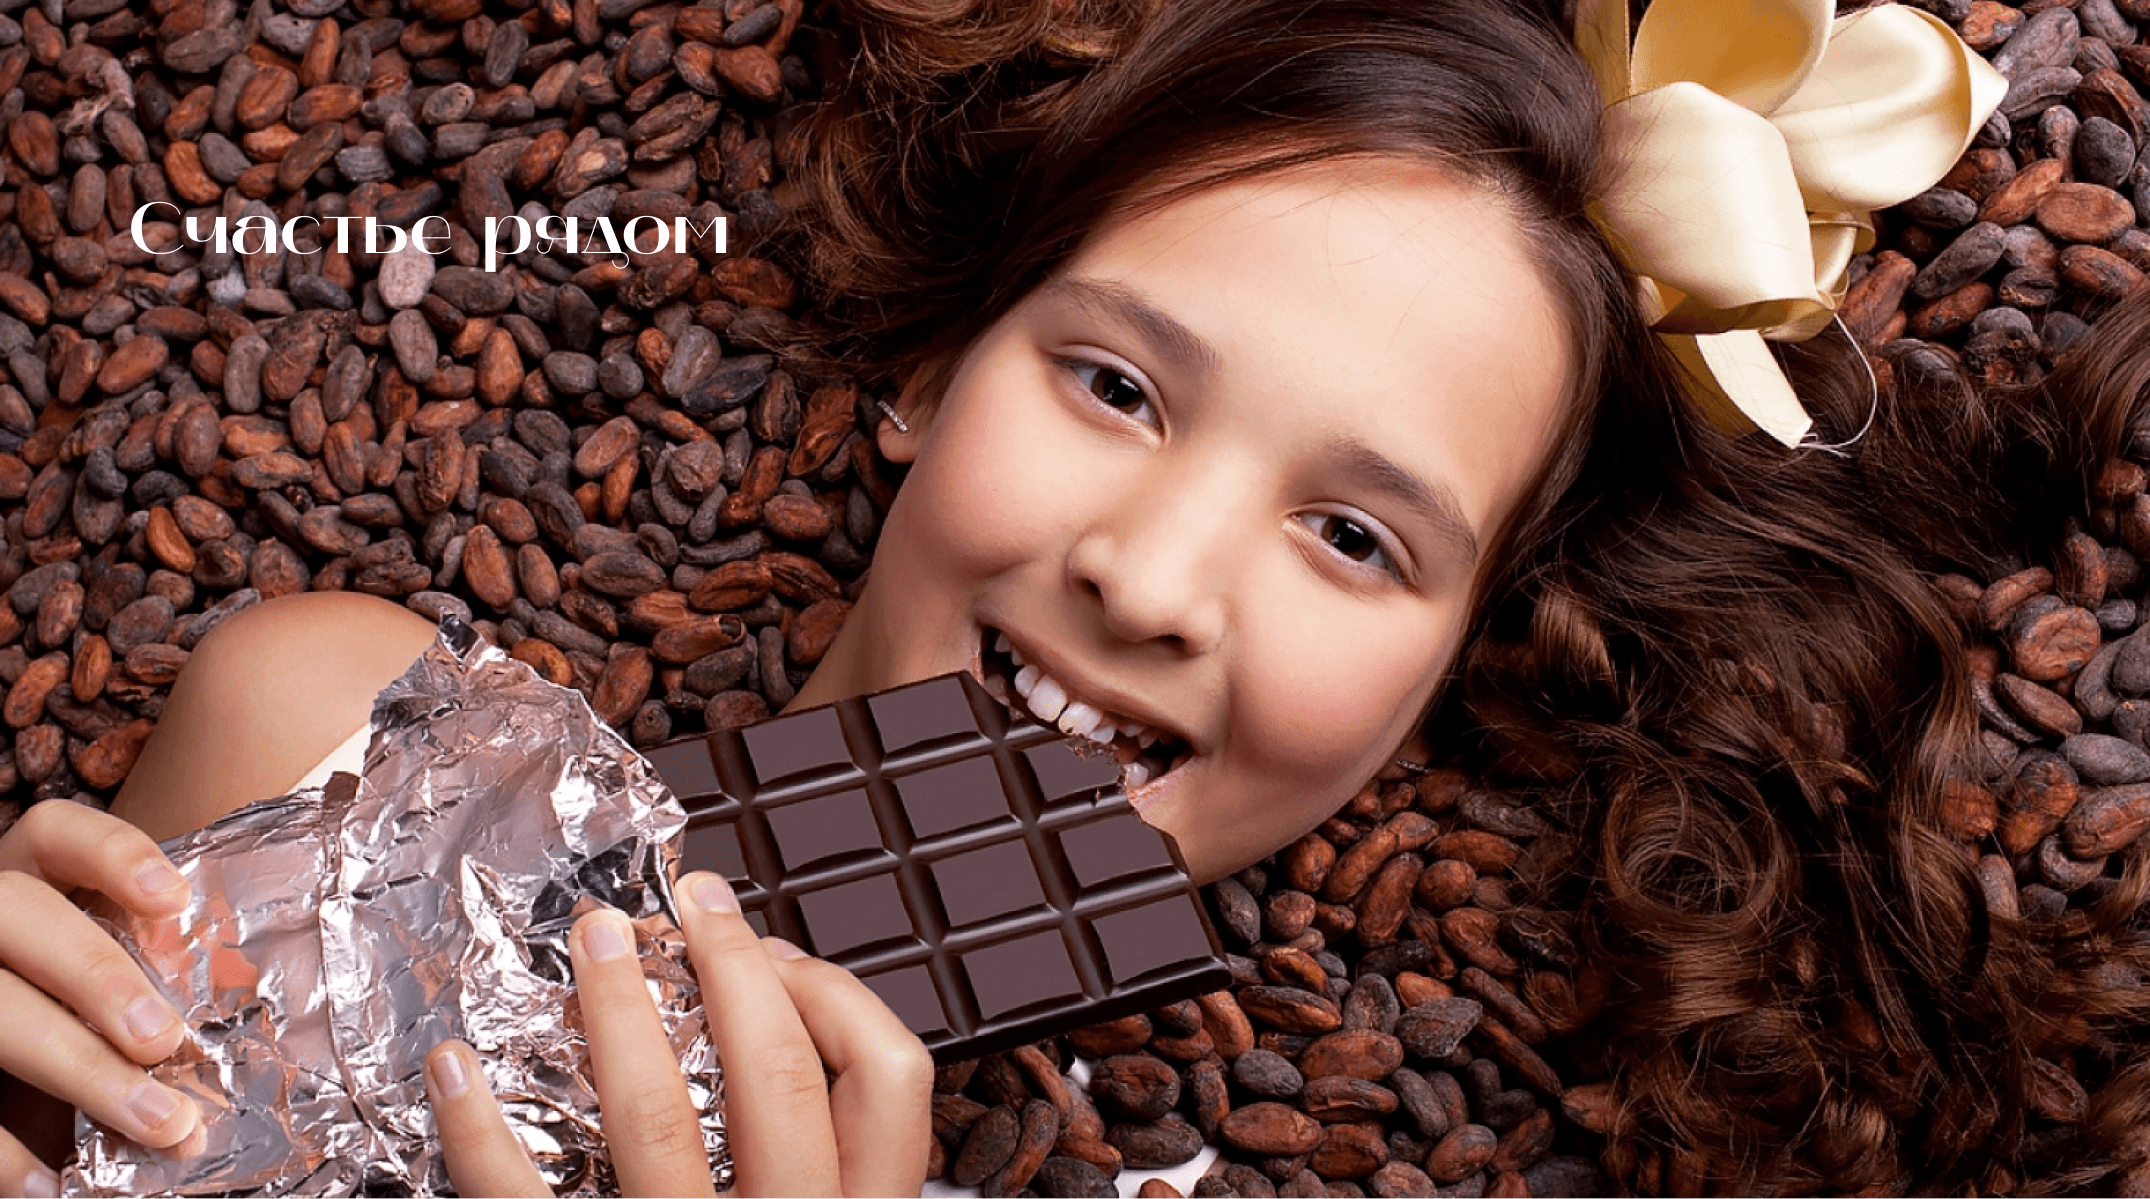 Говорящая шоколада. Шоколадная девушка. Девушка ест шоколад. Конфеты детям.